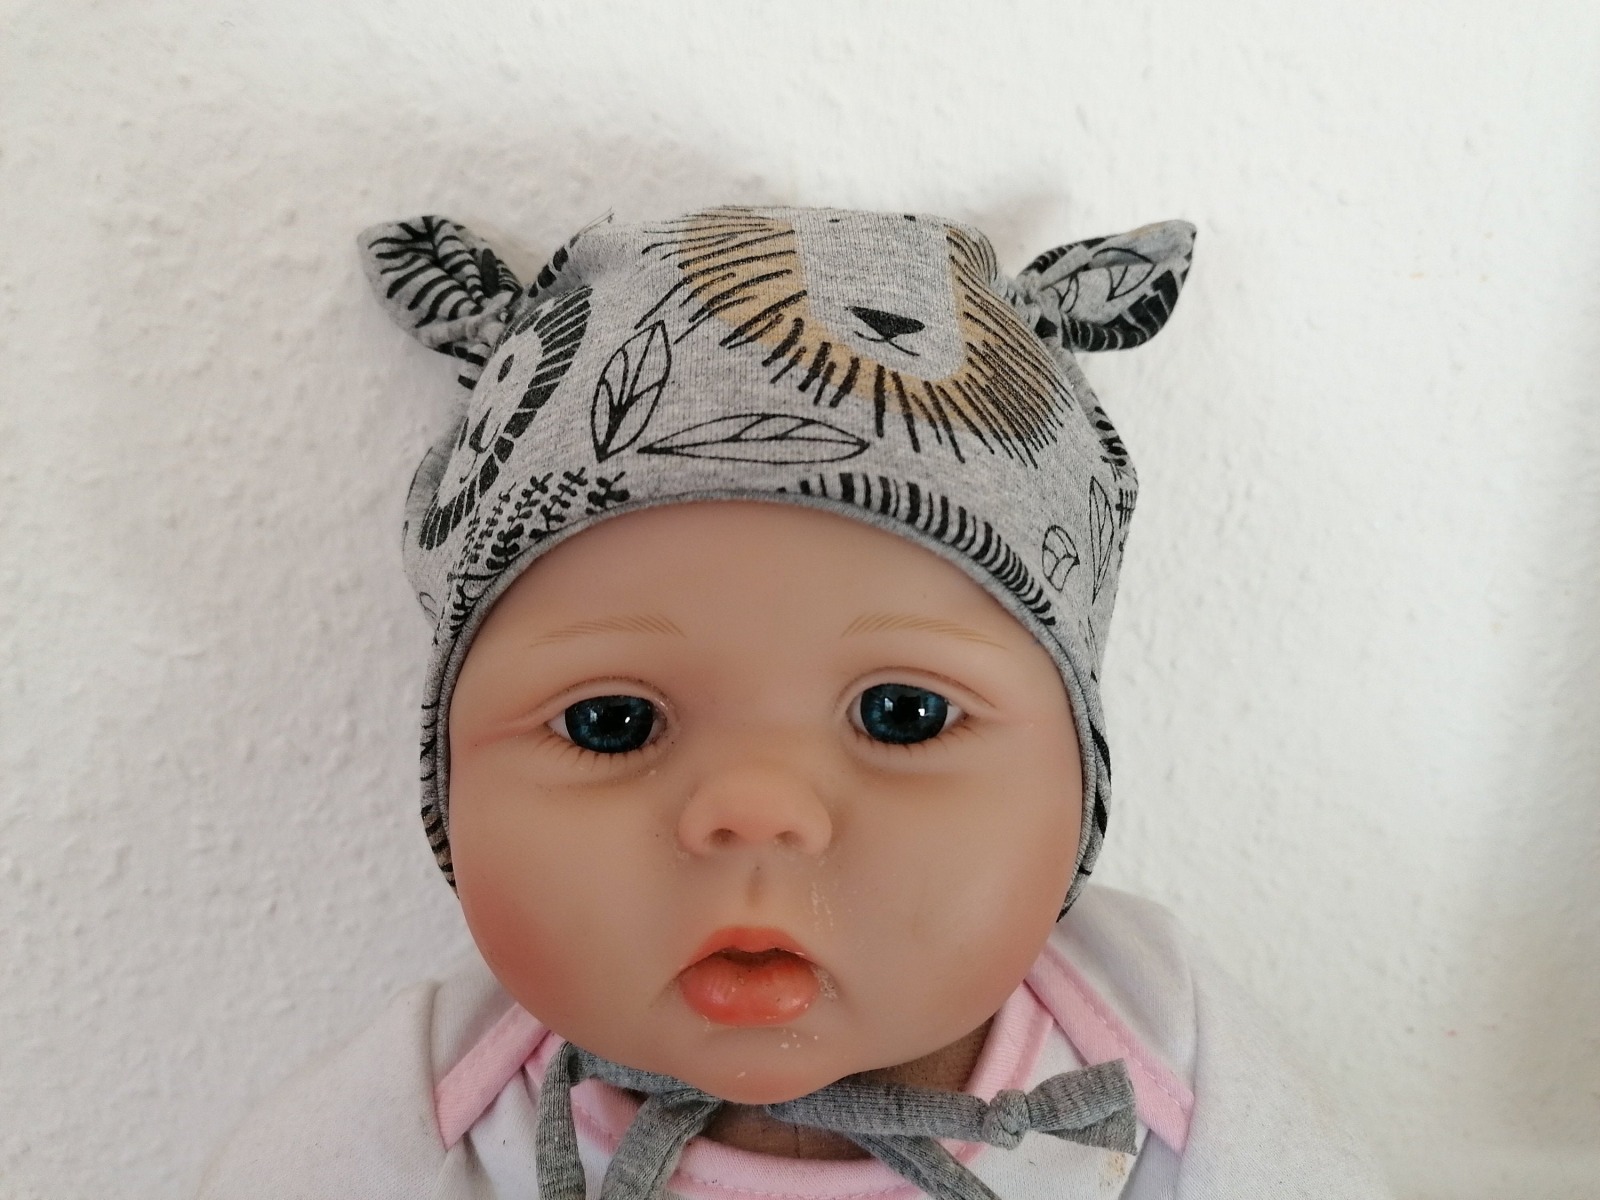 Baby Kind Ohrenmütze mit und ohne Bindebänder Anker rot weiß Kopfumfang 36 - 52cm Mütze mit Ohren Kindermütze Bindemütze maritim 4